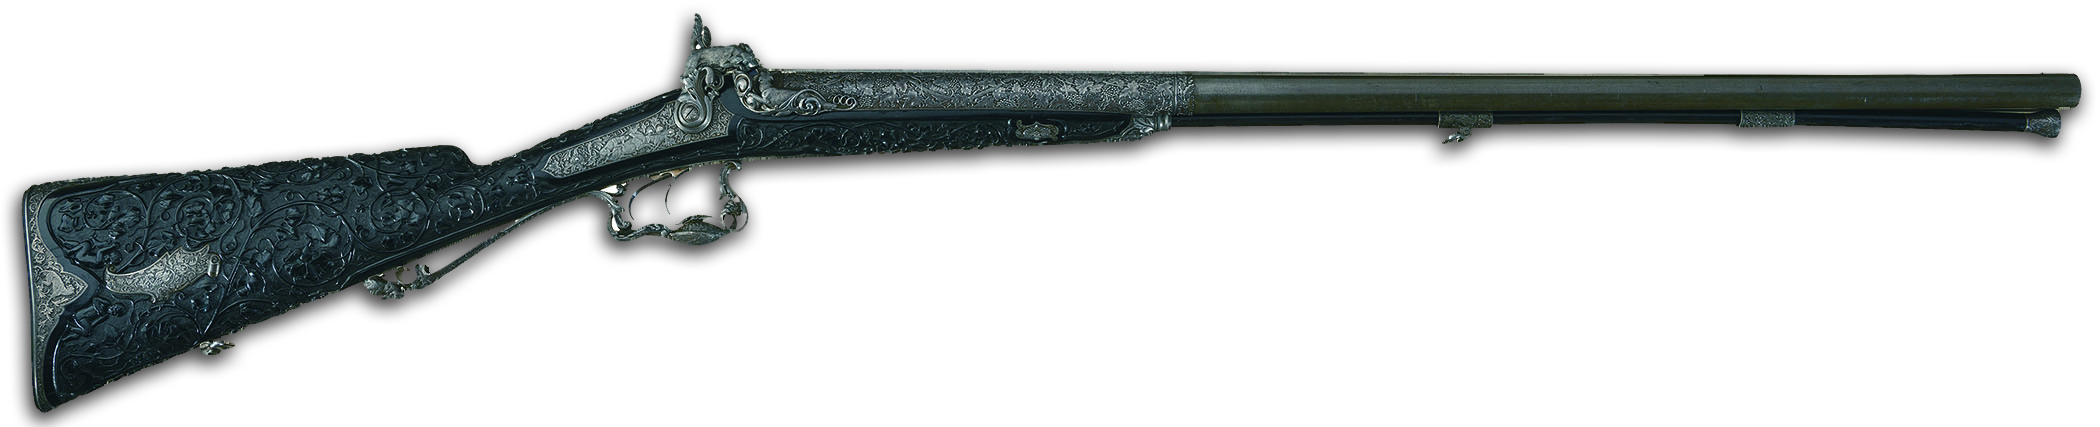 premiere firearms auction rifle